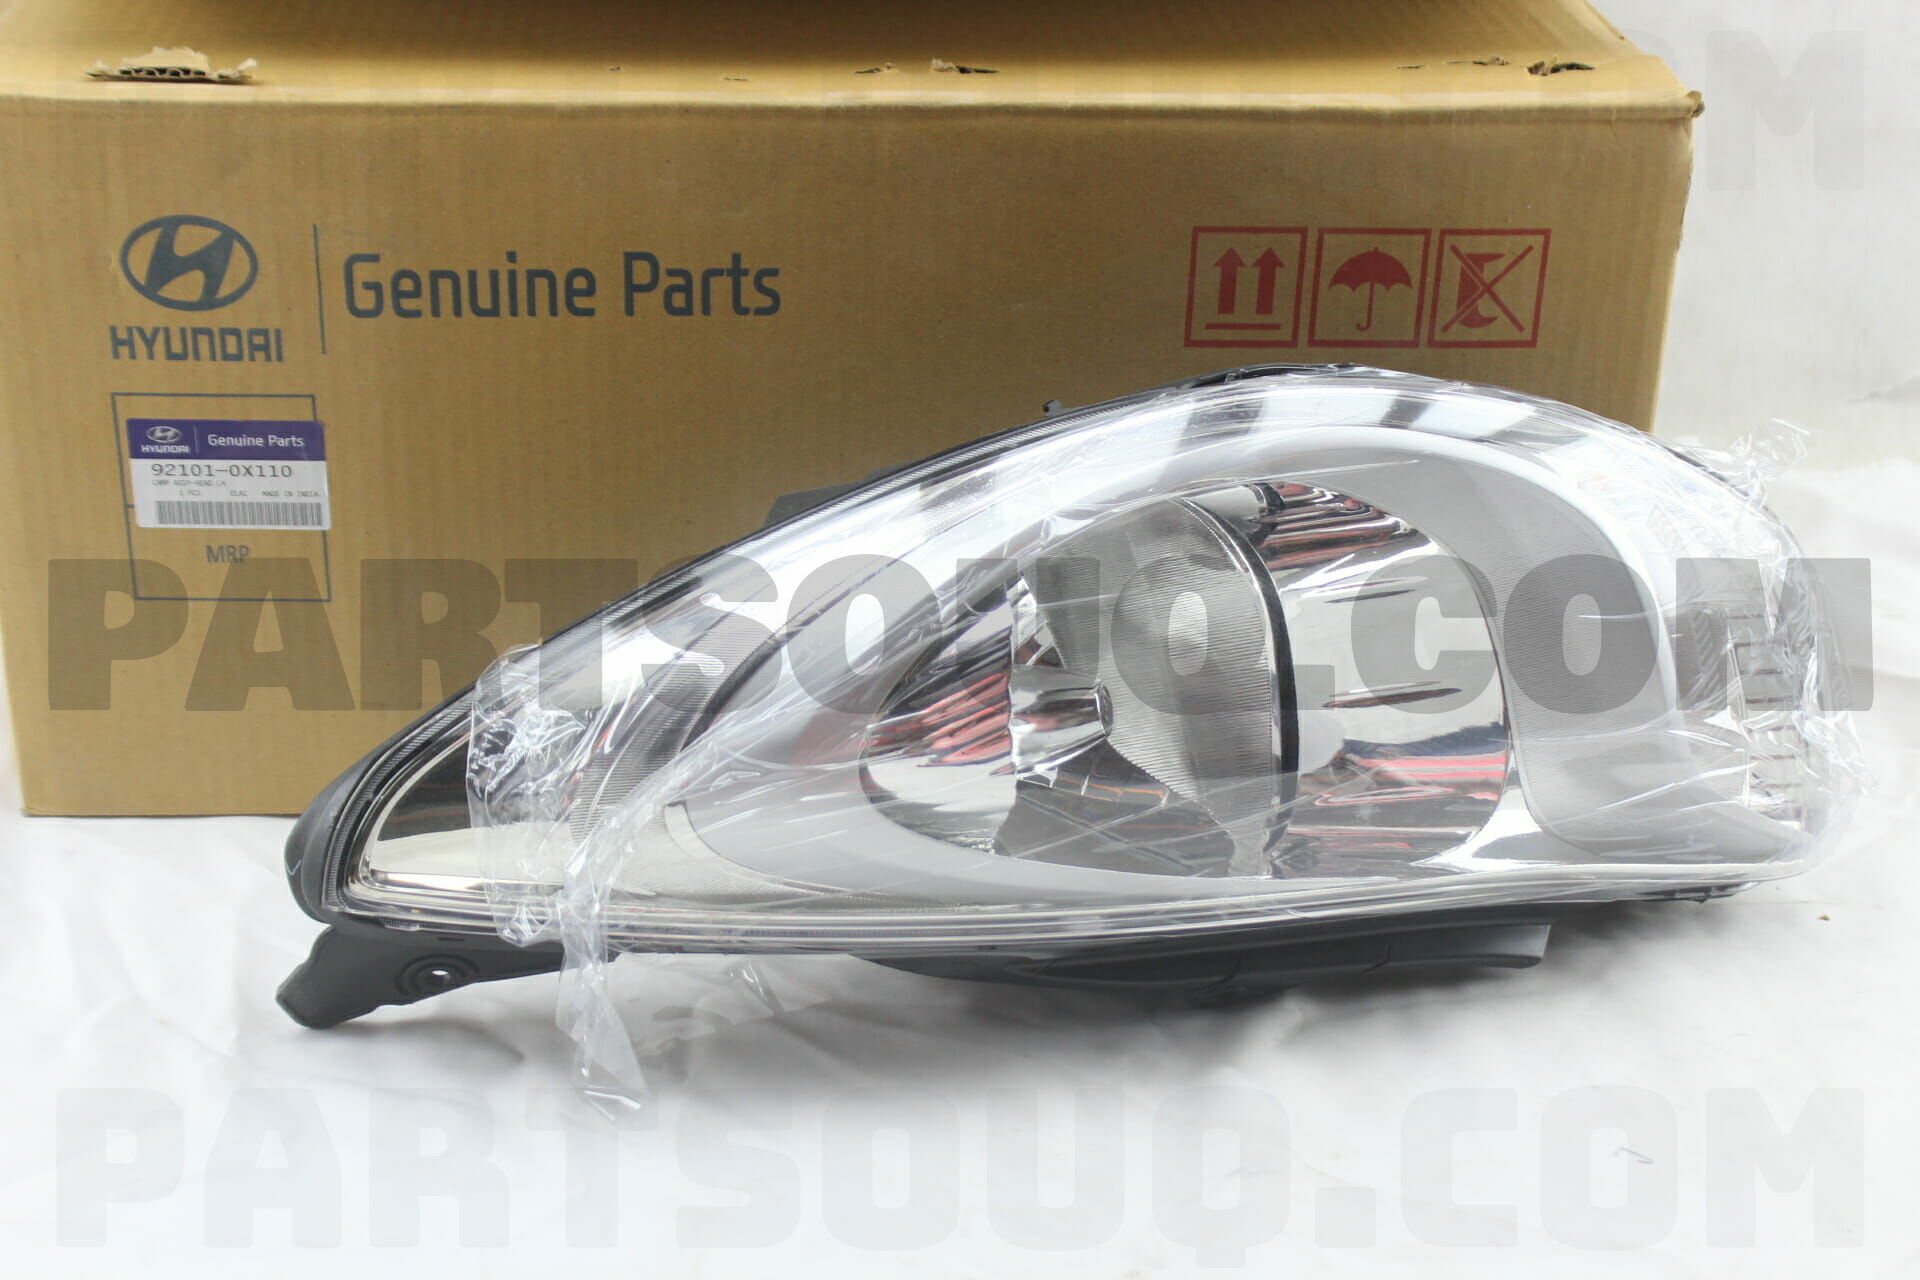 LAMP ASSY-HEAD,LH 921010X110 | Hyundai / KIA Parts | PartSouq